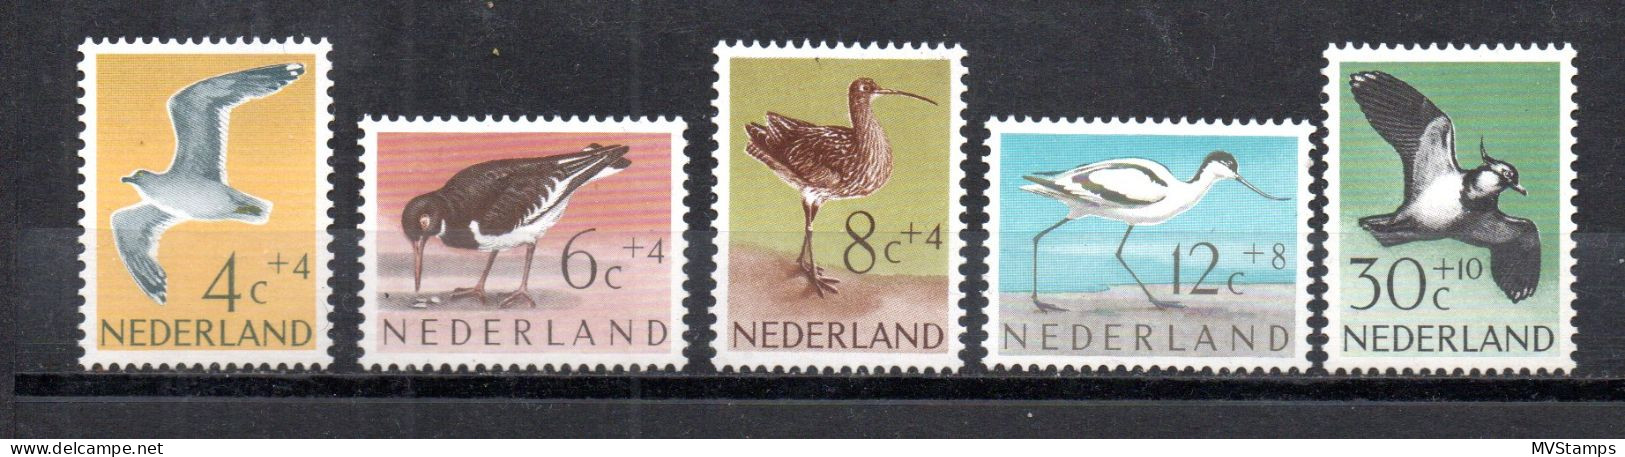 Netherlands 1961 Set Birds/Vogel Stamps (Michel 760/64) MNH - Nuovi